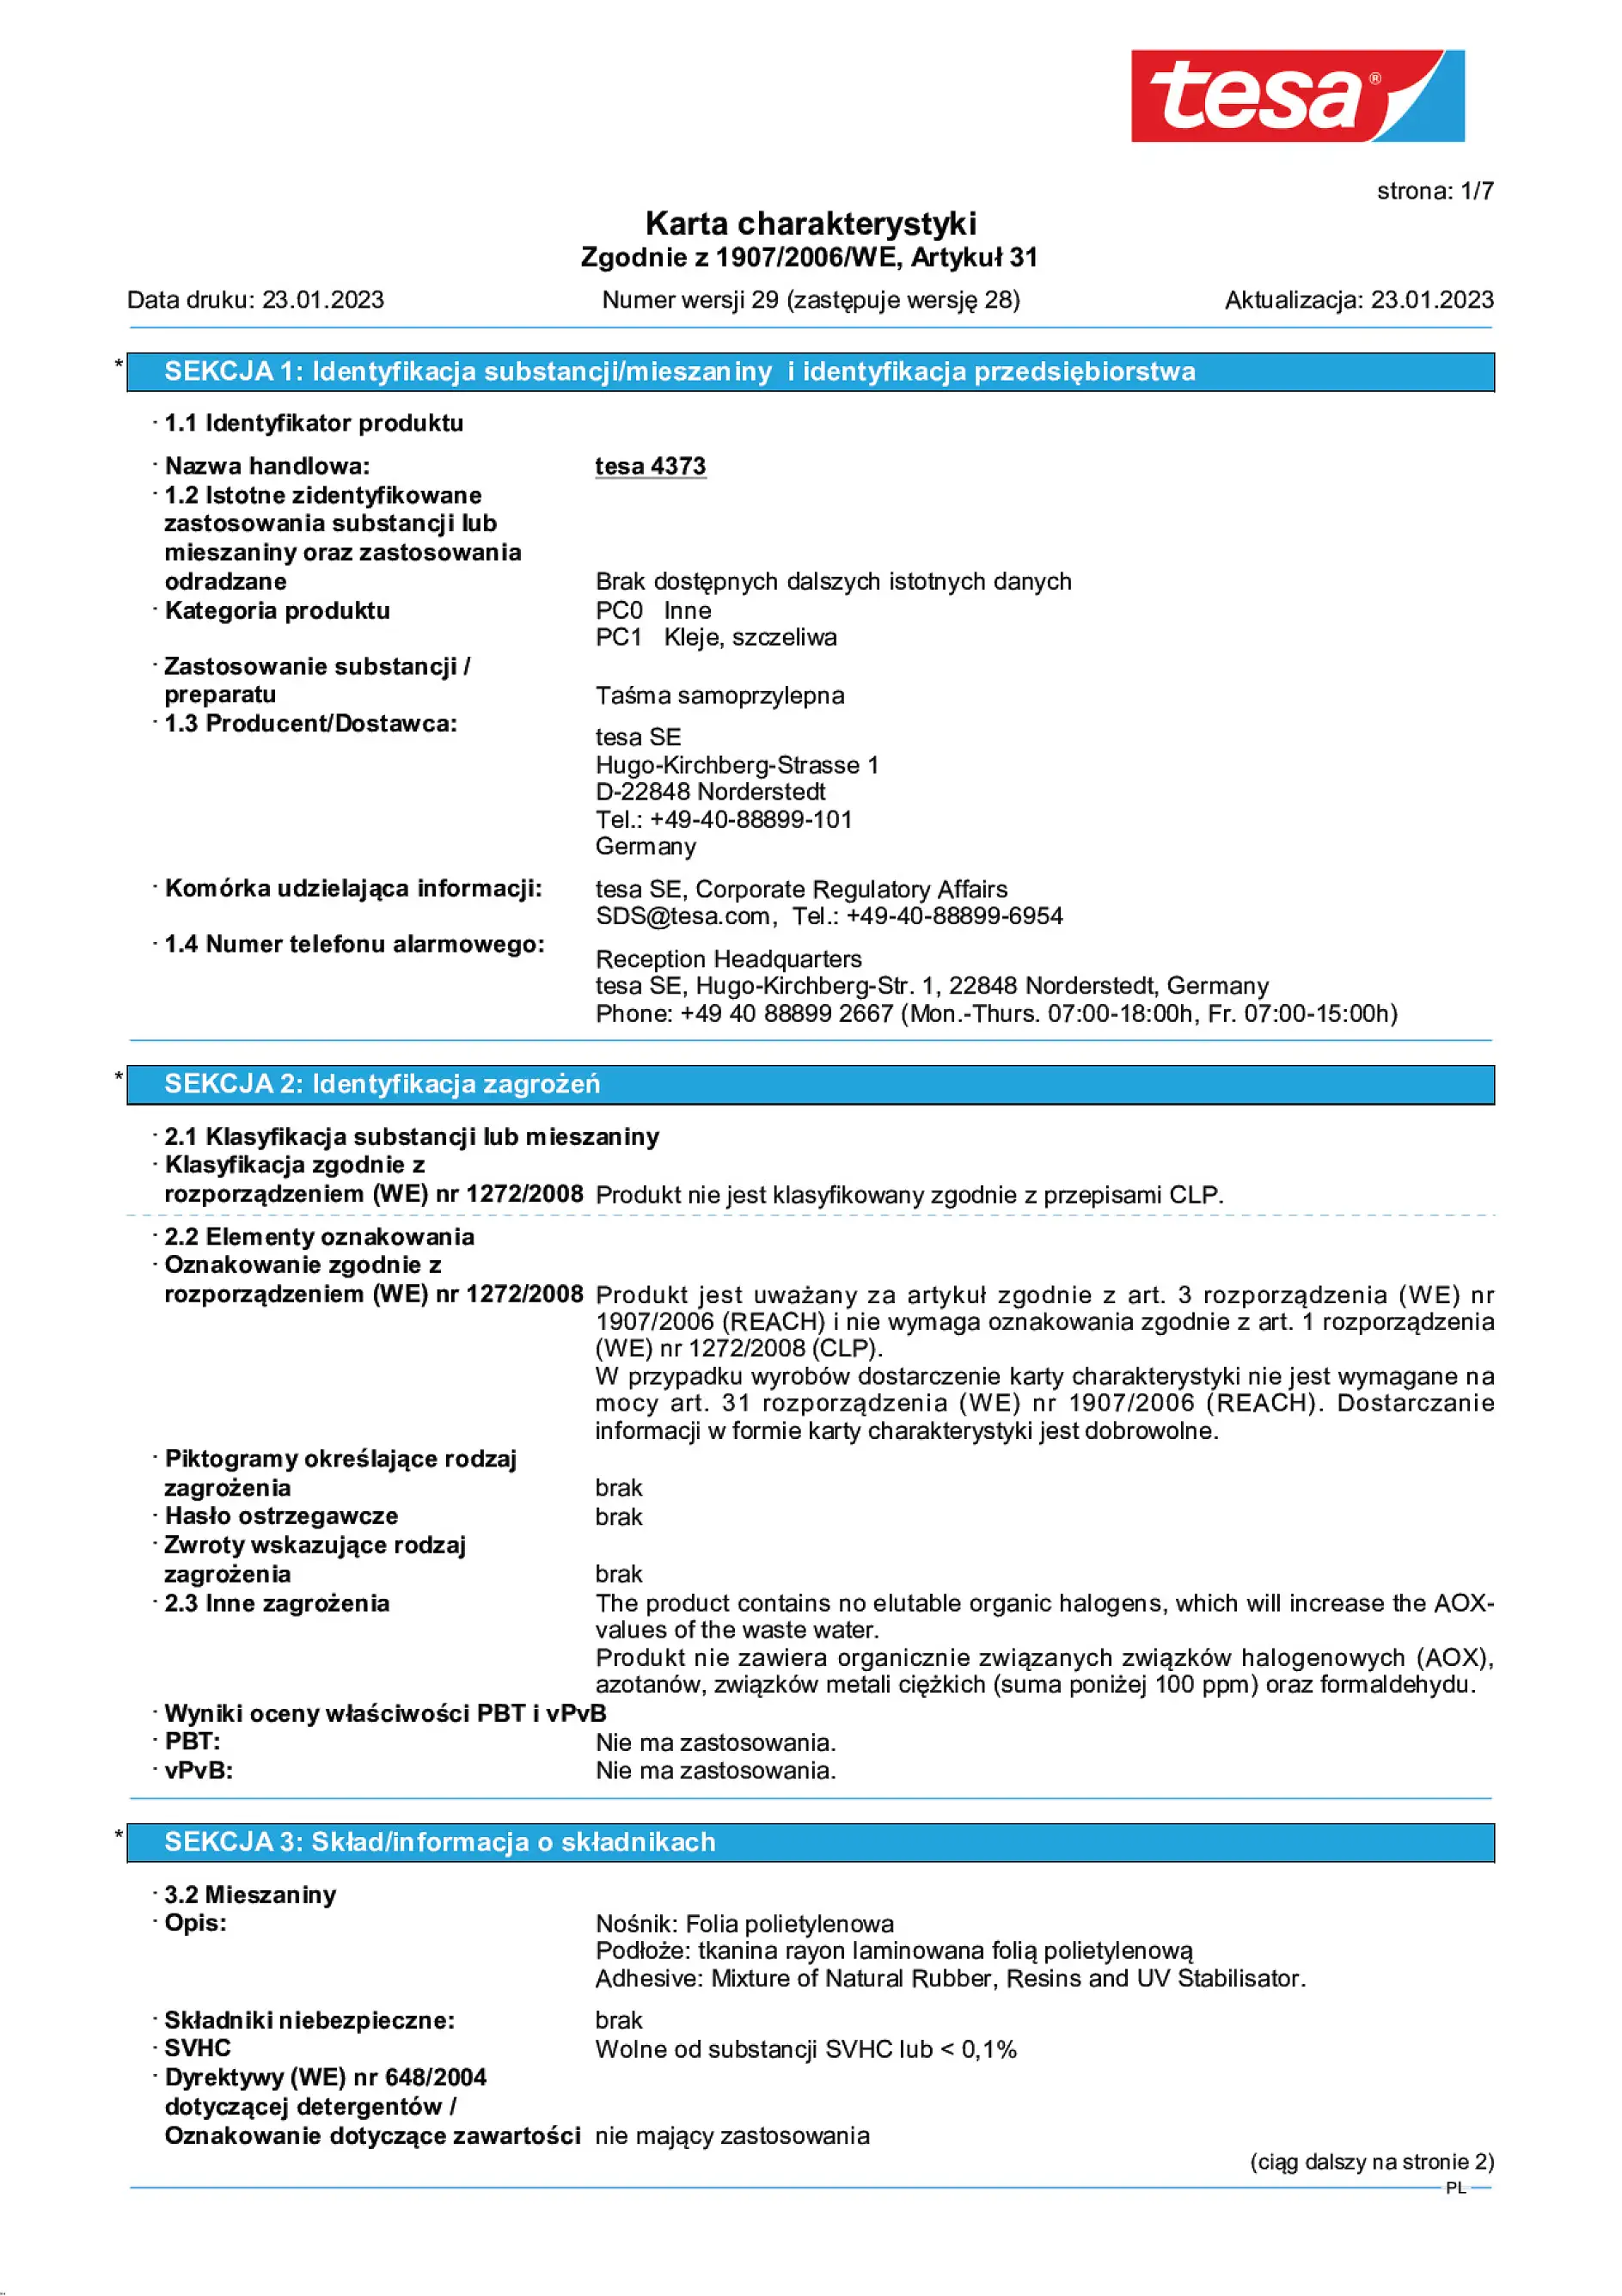 Safety data sheet_tesa® Professional 04373_pl-PL_v29